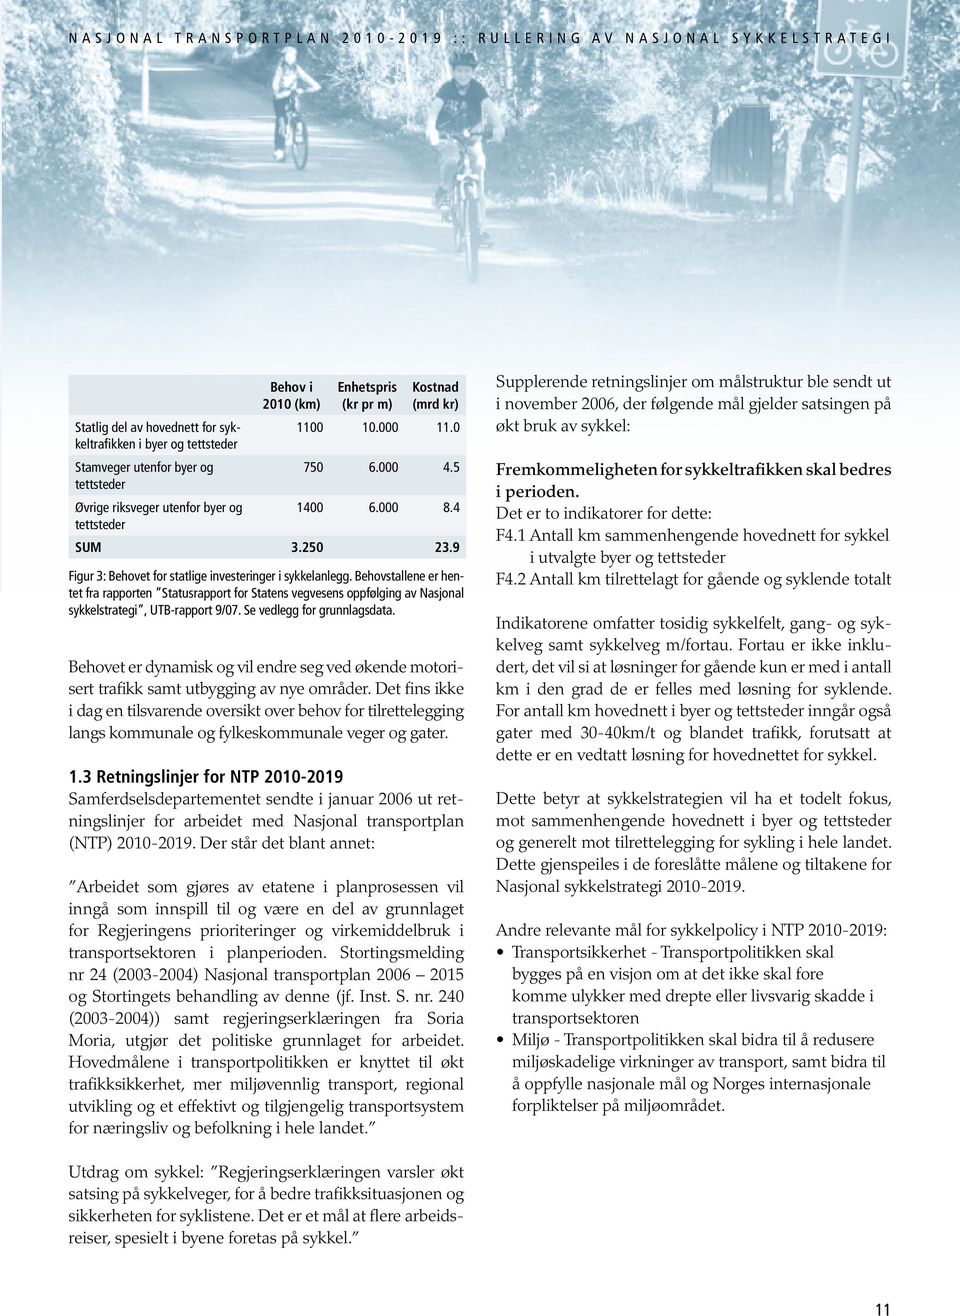 Behovstallene er hentet fra rapporten Statusrapport for Statens vegvesens oppfølging av Nasjonal sykkelstrategi, UTB-rapport 9/07. Se vedlegg for grunnlagsdata.